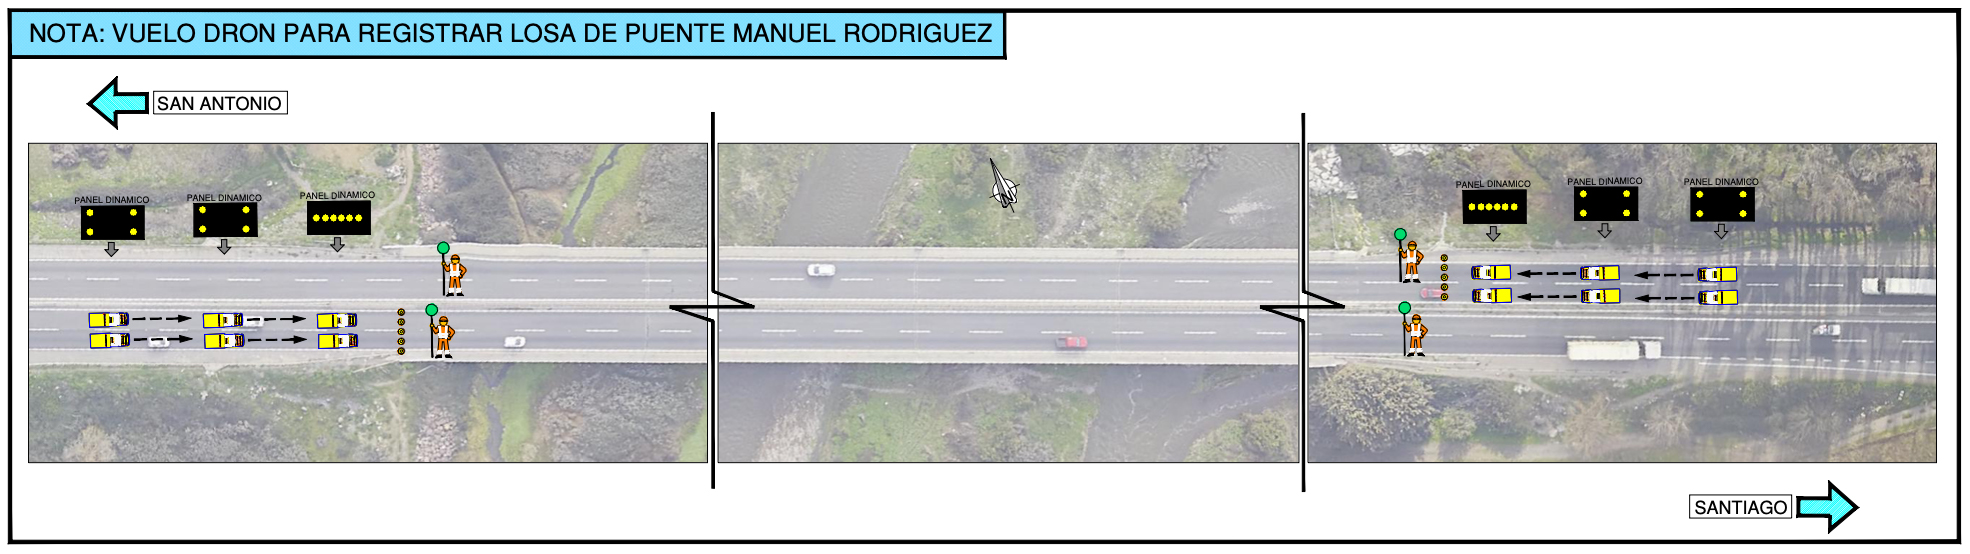 Ruta 78, Corte de tránsito temporal en puente Manuel Rodriguez